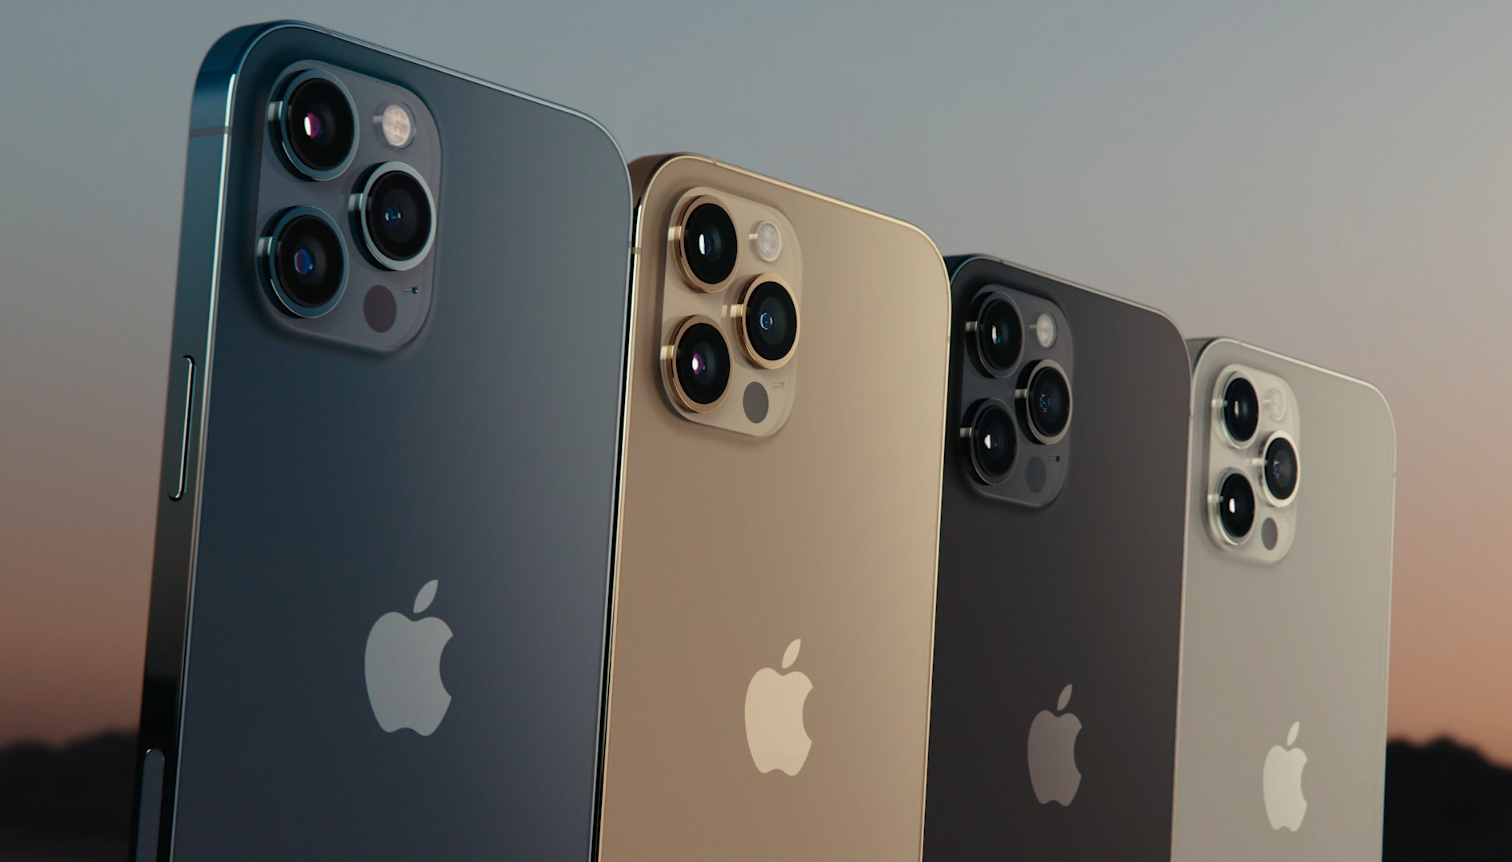 iPhone 12 kontra iPhone 11 - w czym nowe modele są lepsze od starszych?